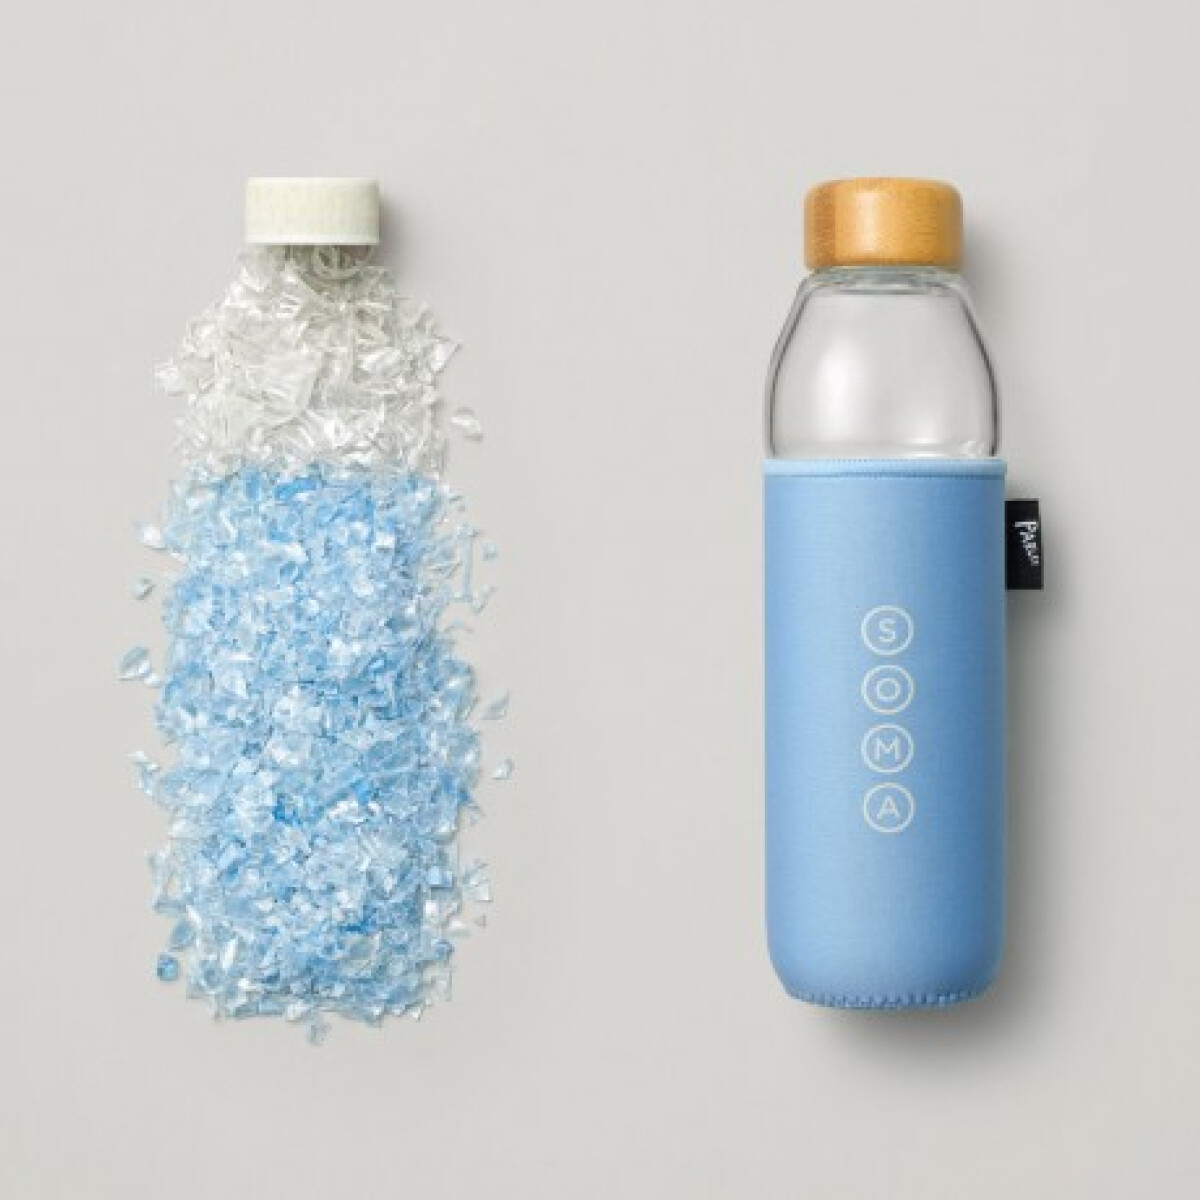 Az óceánban úszó műanyagszemét új életre kel a Starbucksban